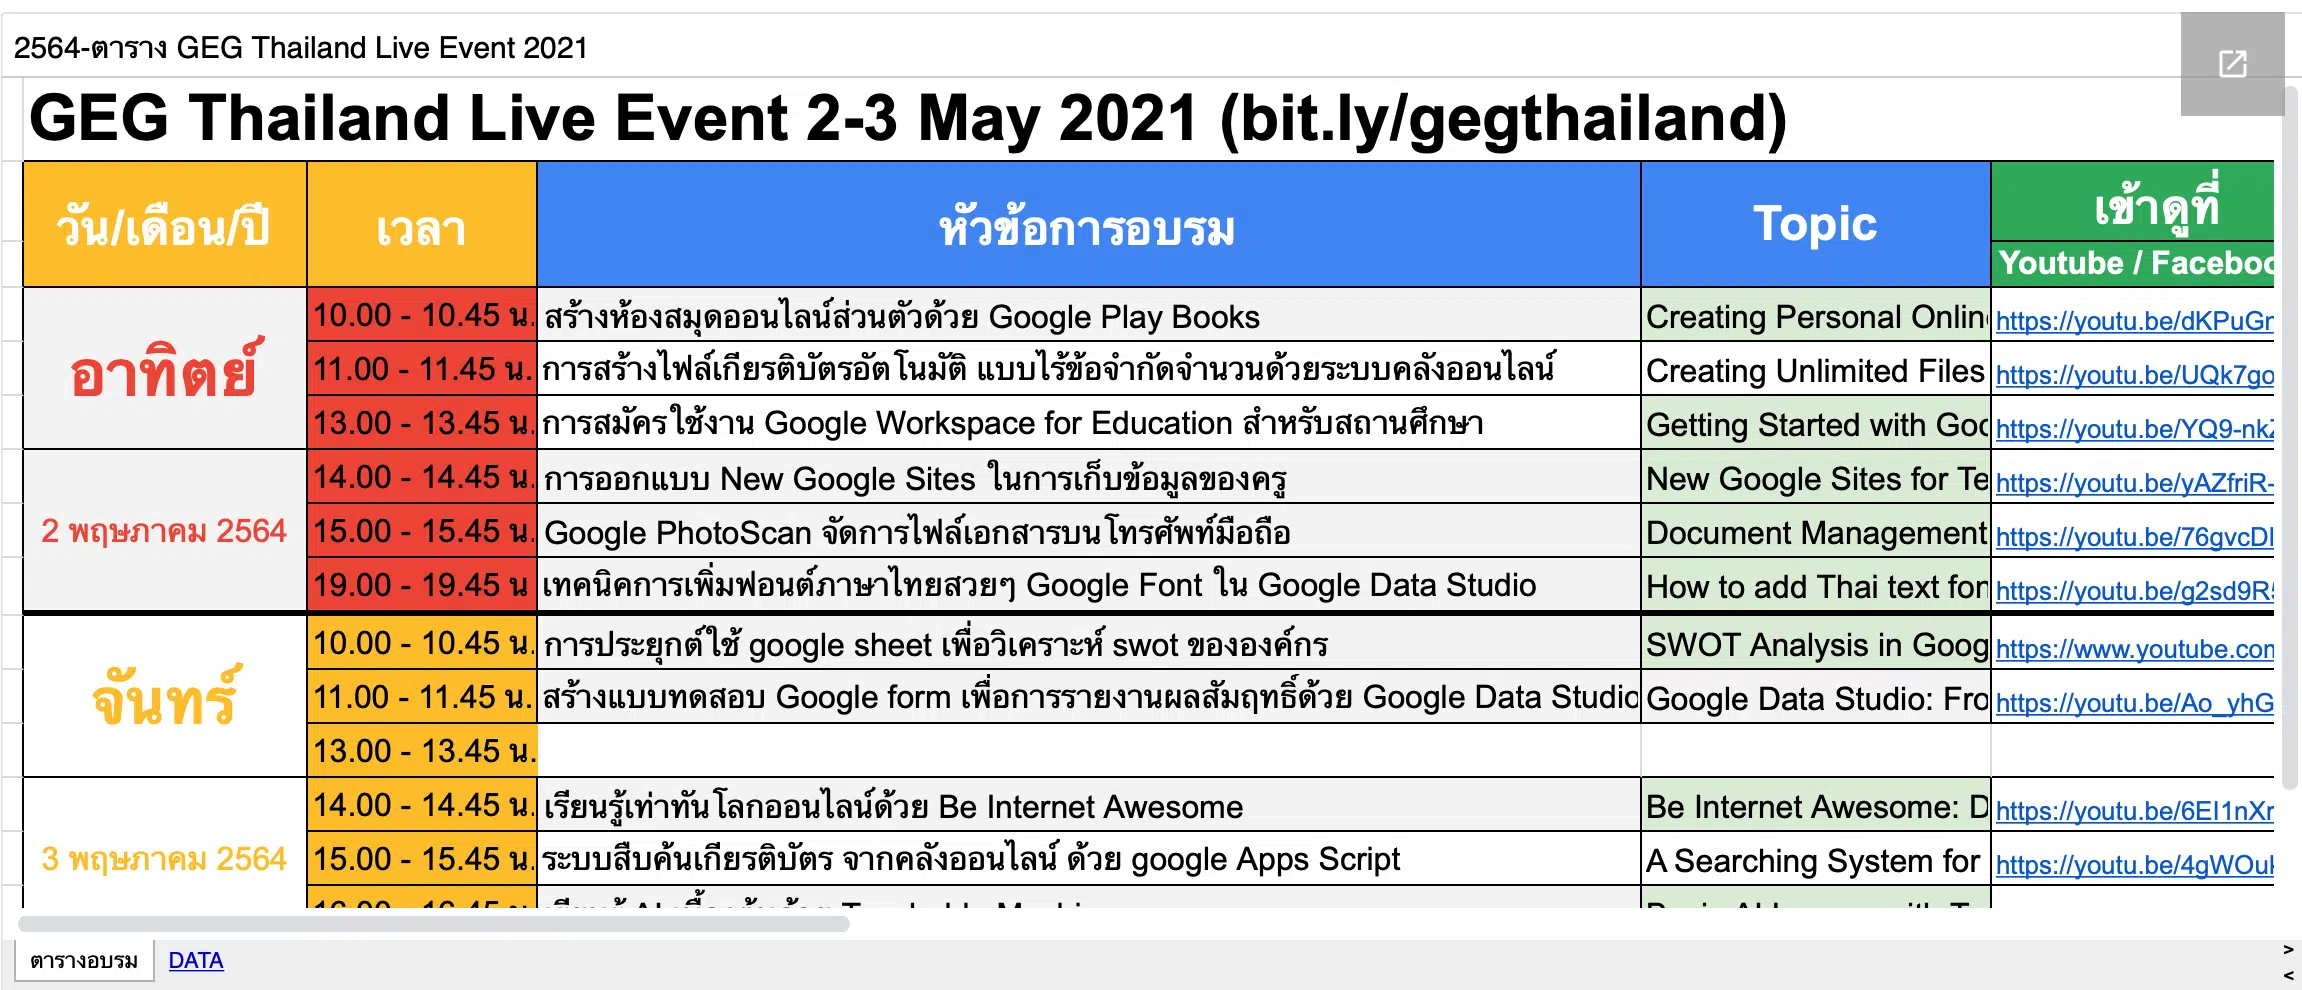 อบรมออนไลน์ฟรี!! การใช้ Google เพื่อการจัดการเรียนการสอน 11 หลักสูตร GEG  Thailand  Live Event 2-3 MAY 2021 รับเกียรติบัตรฟรี!!